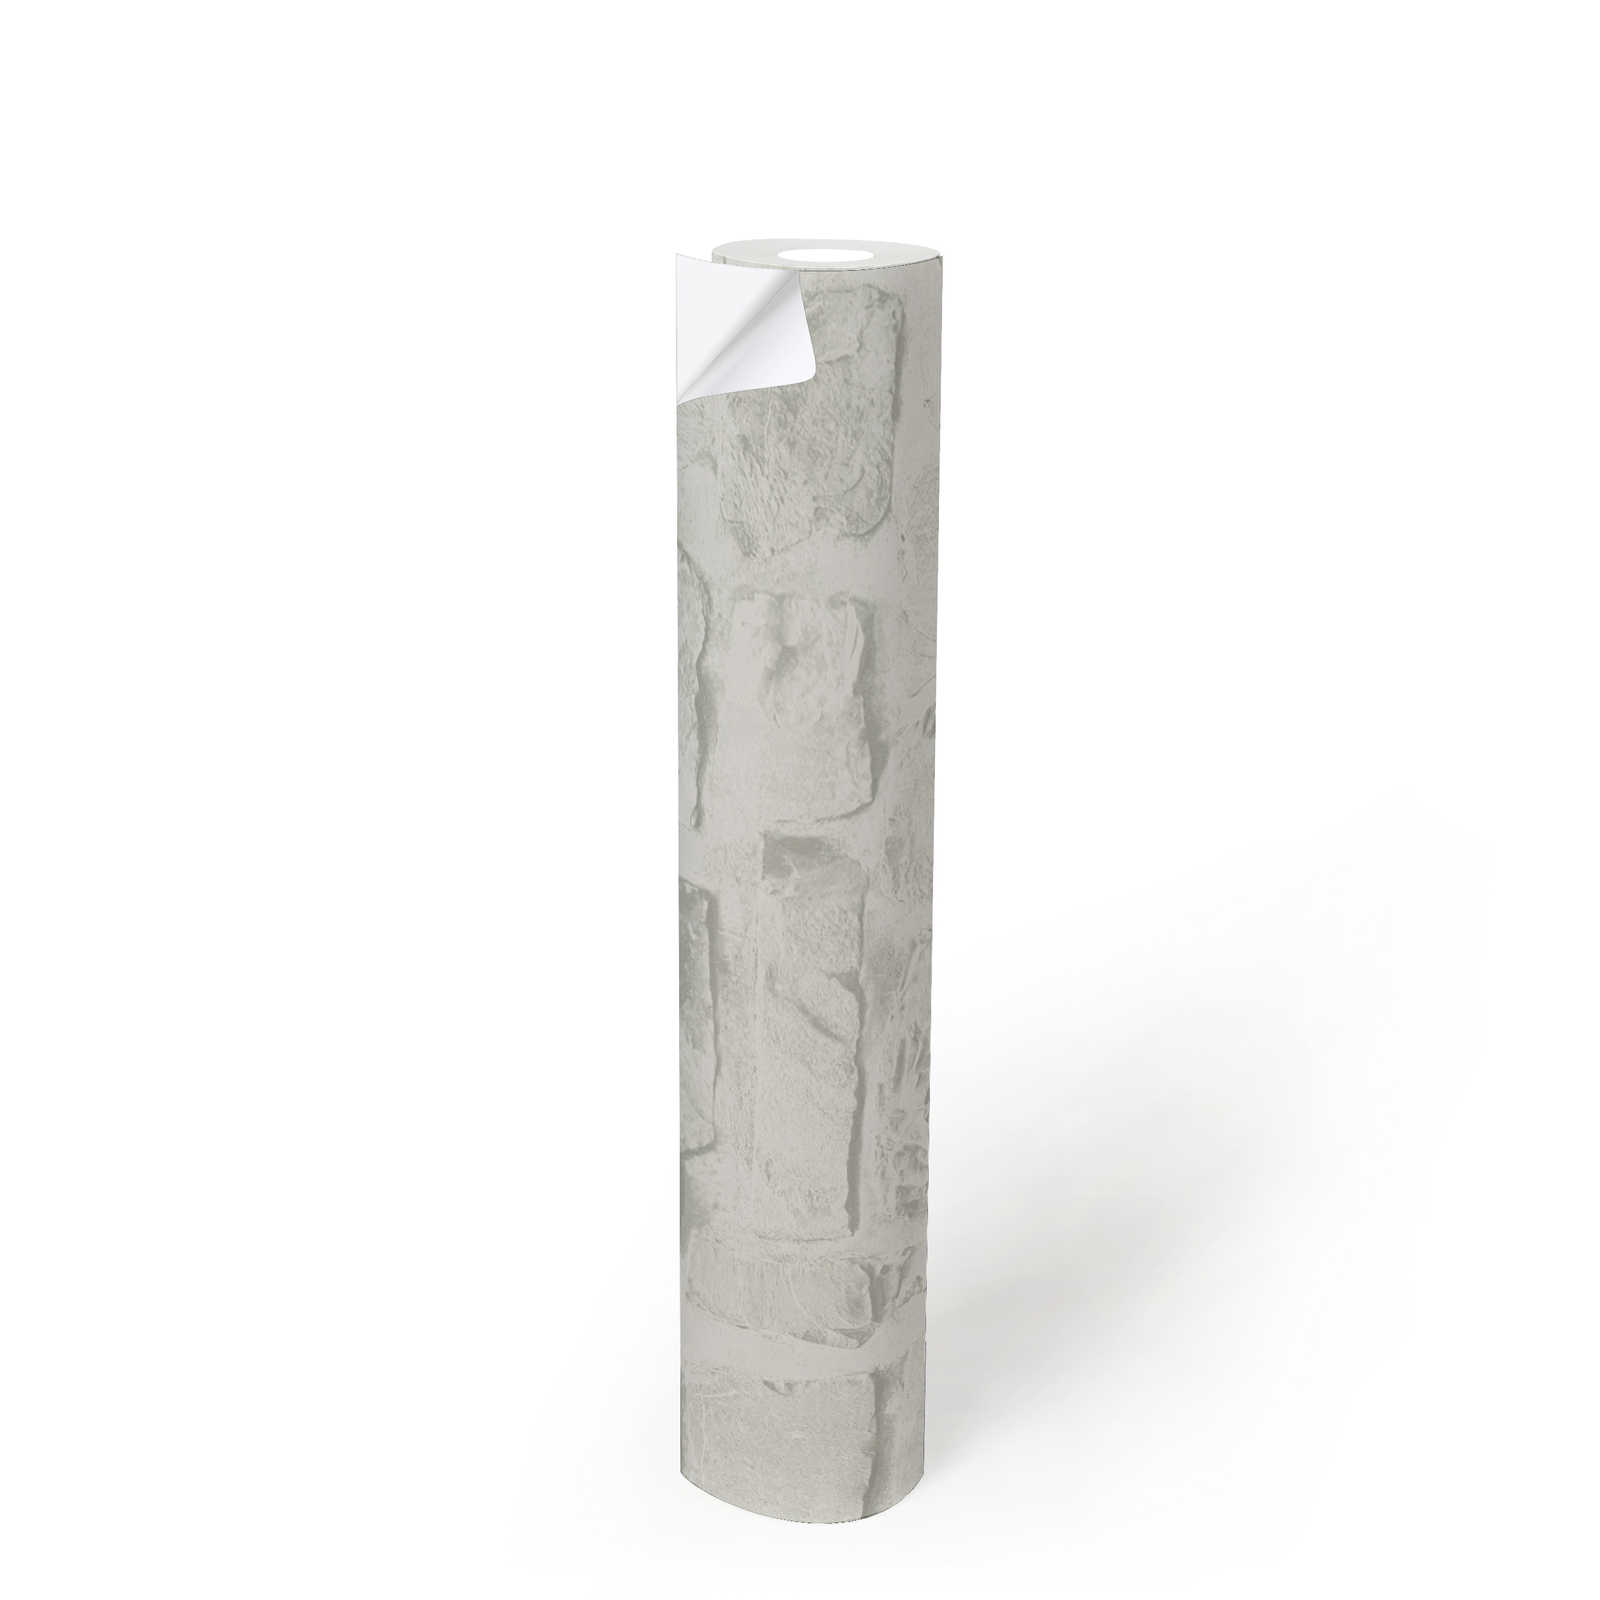             Papier peint adhésif | Aspect pierre blanche avec effet 3D - blanc, gris
        